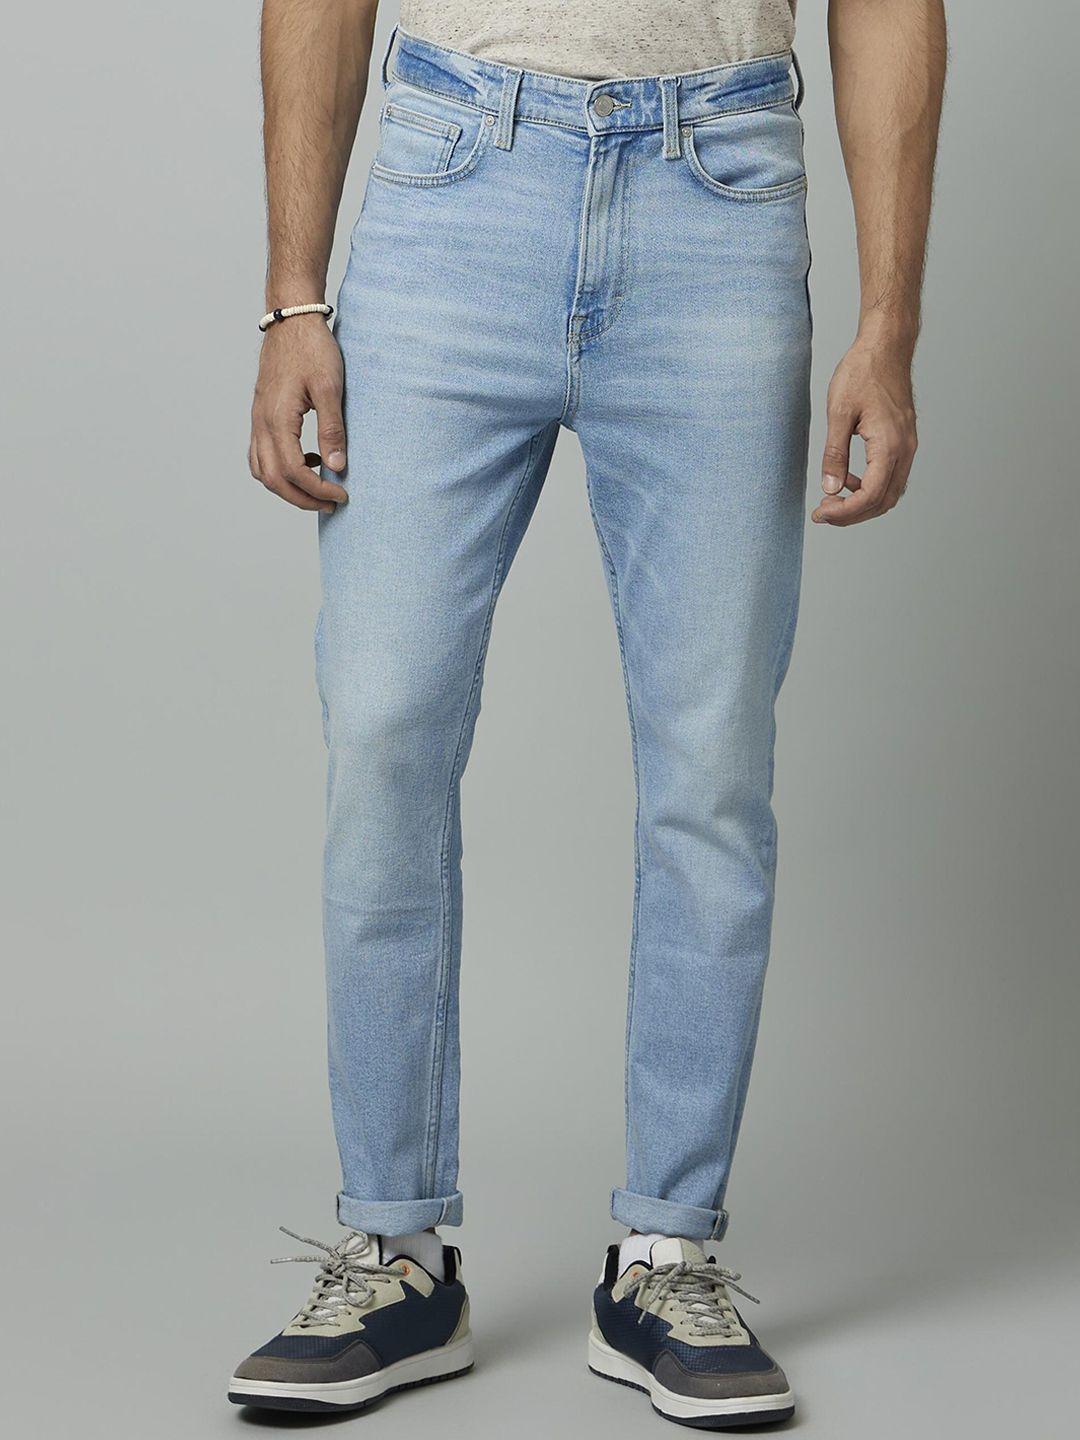 celio men jean slim fit heavy fade stretchable cotton jeans